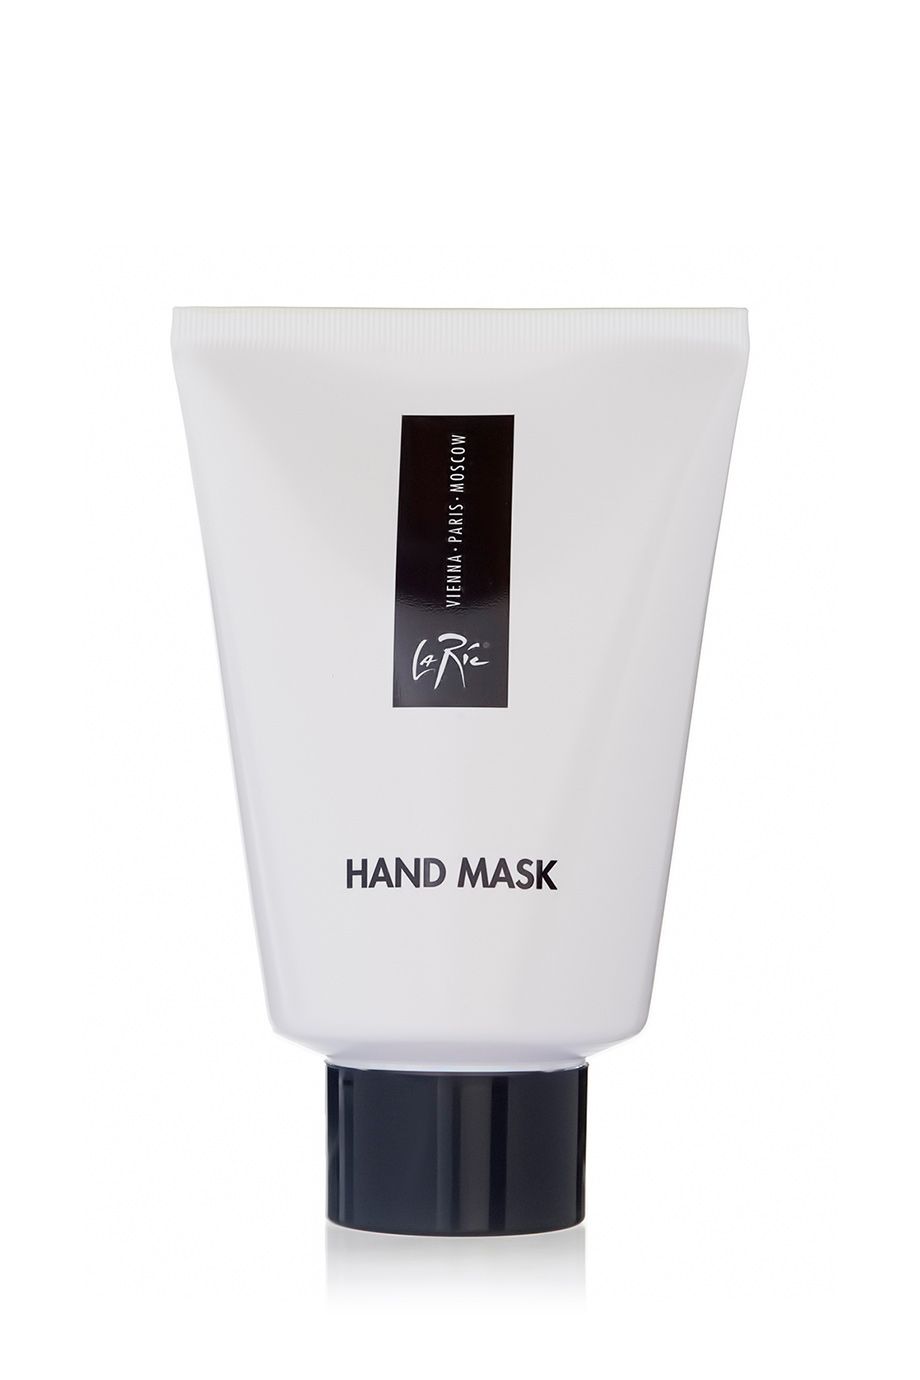 La Ric Hand Mask 100 ml.